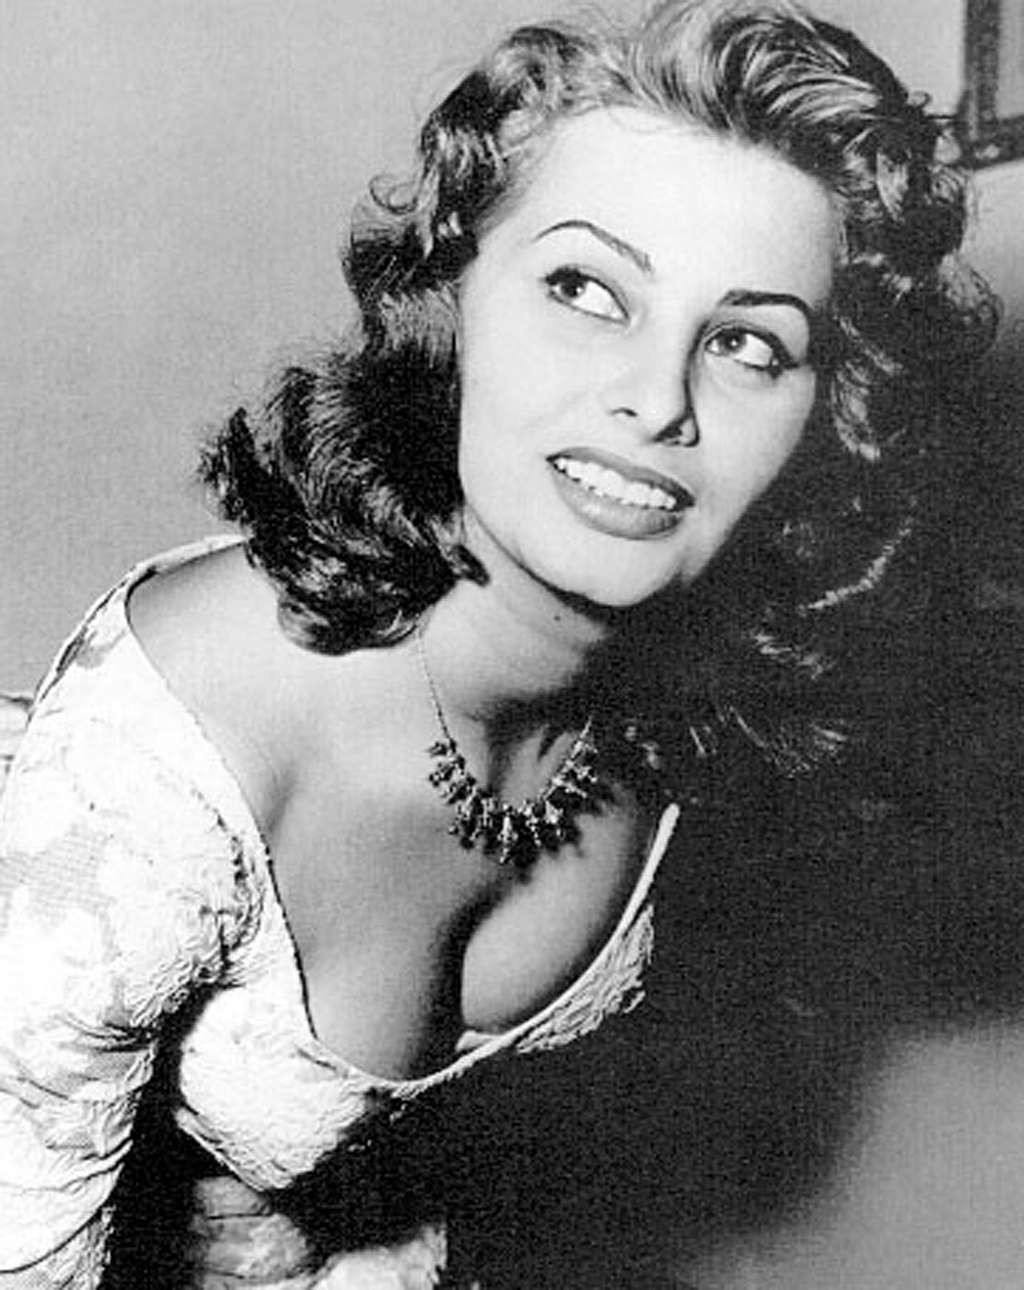 Sophia Loren showing her nice big tits paparazzi shoots #75354204